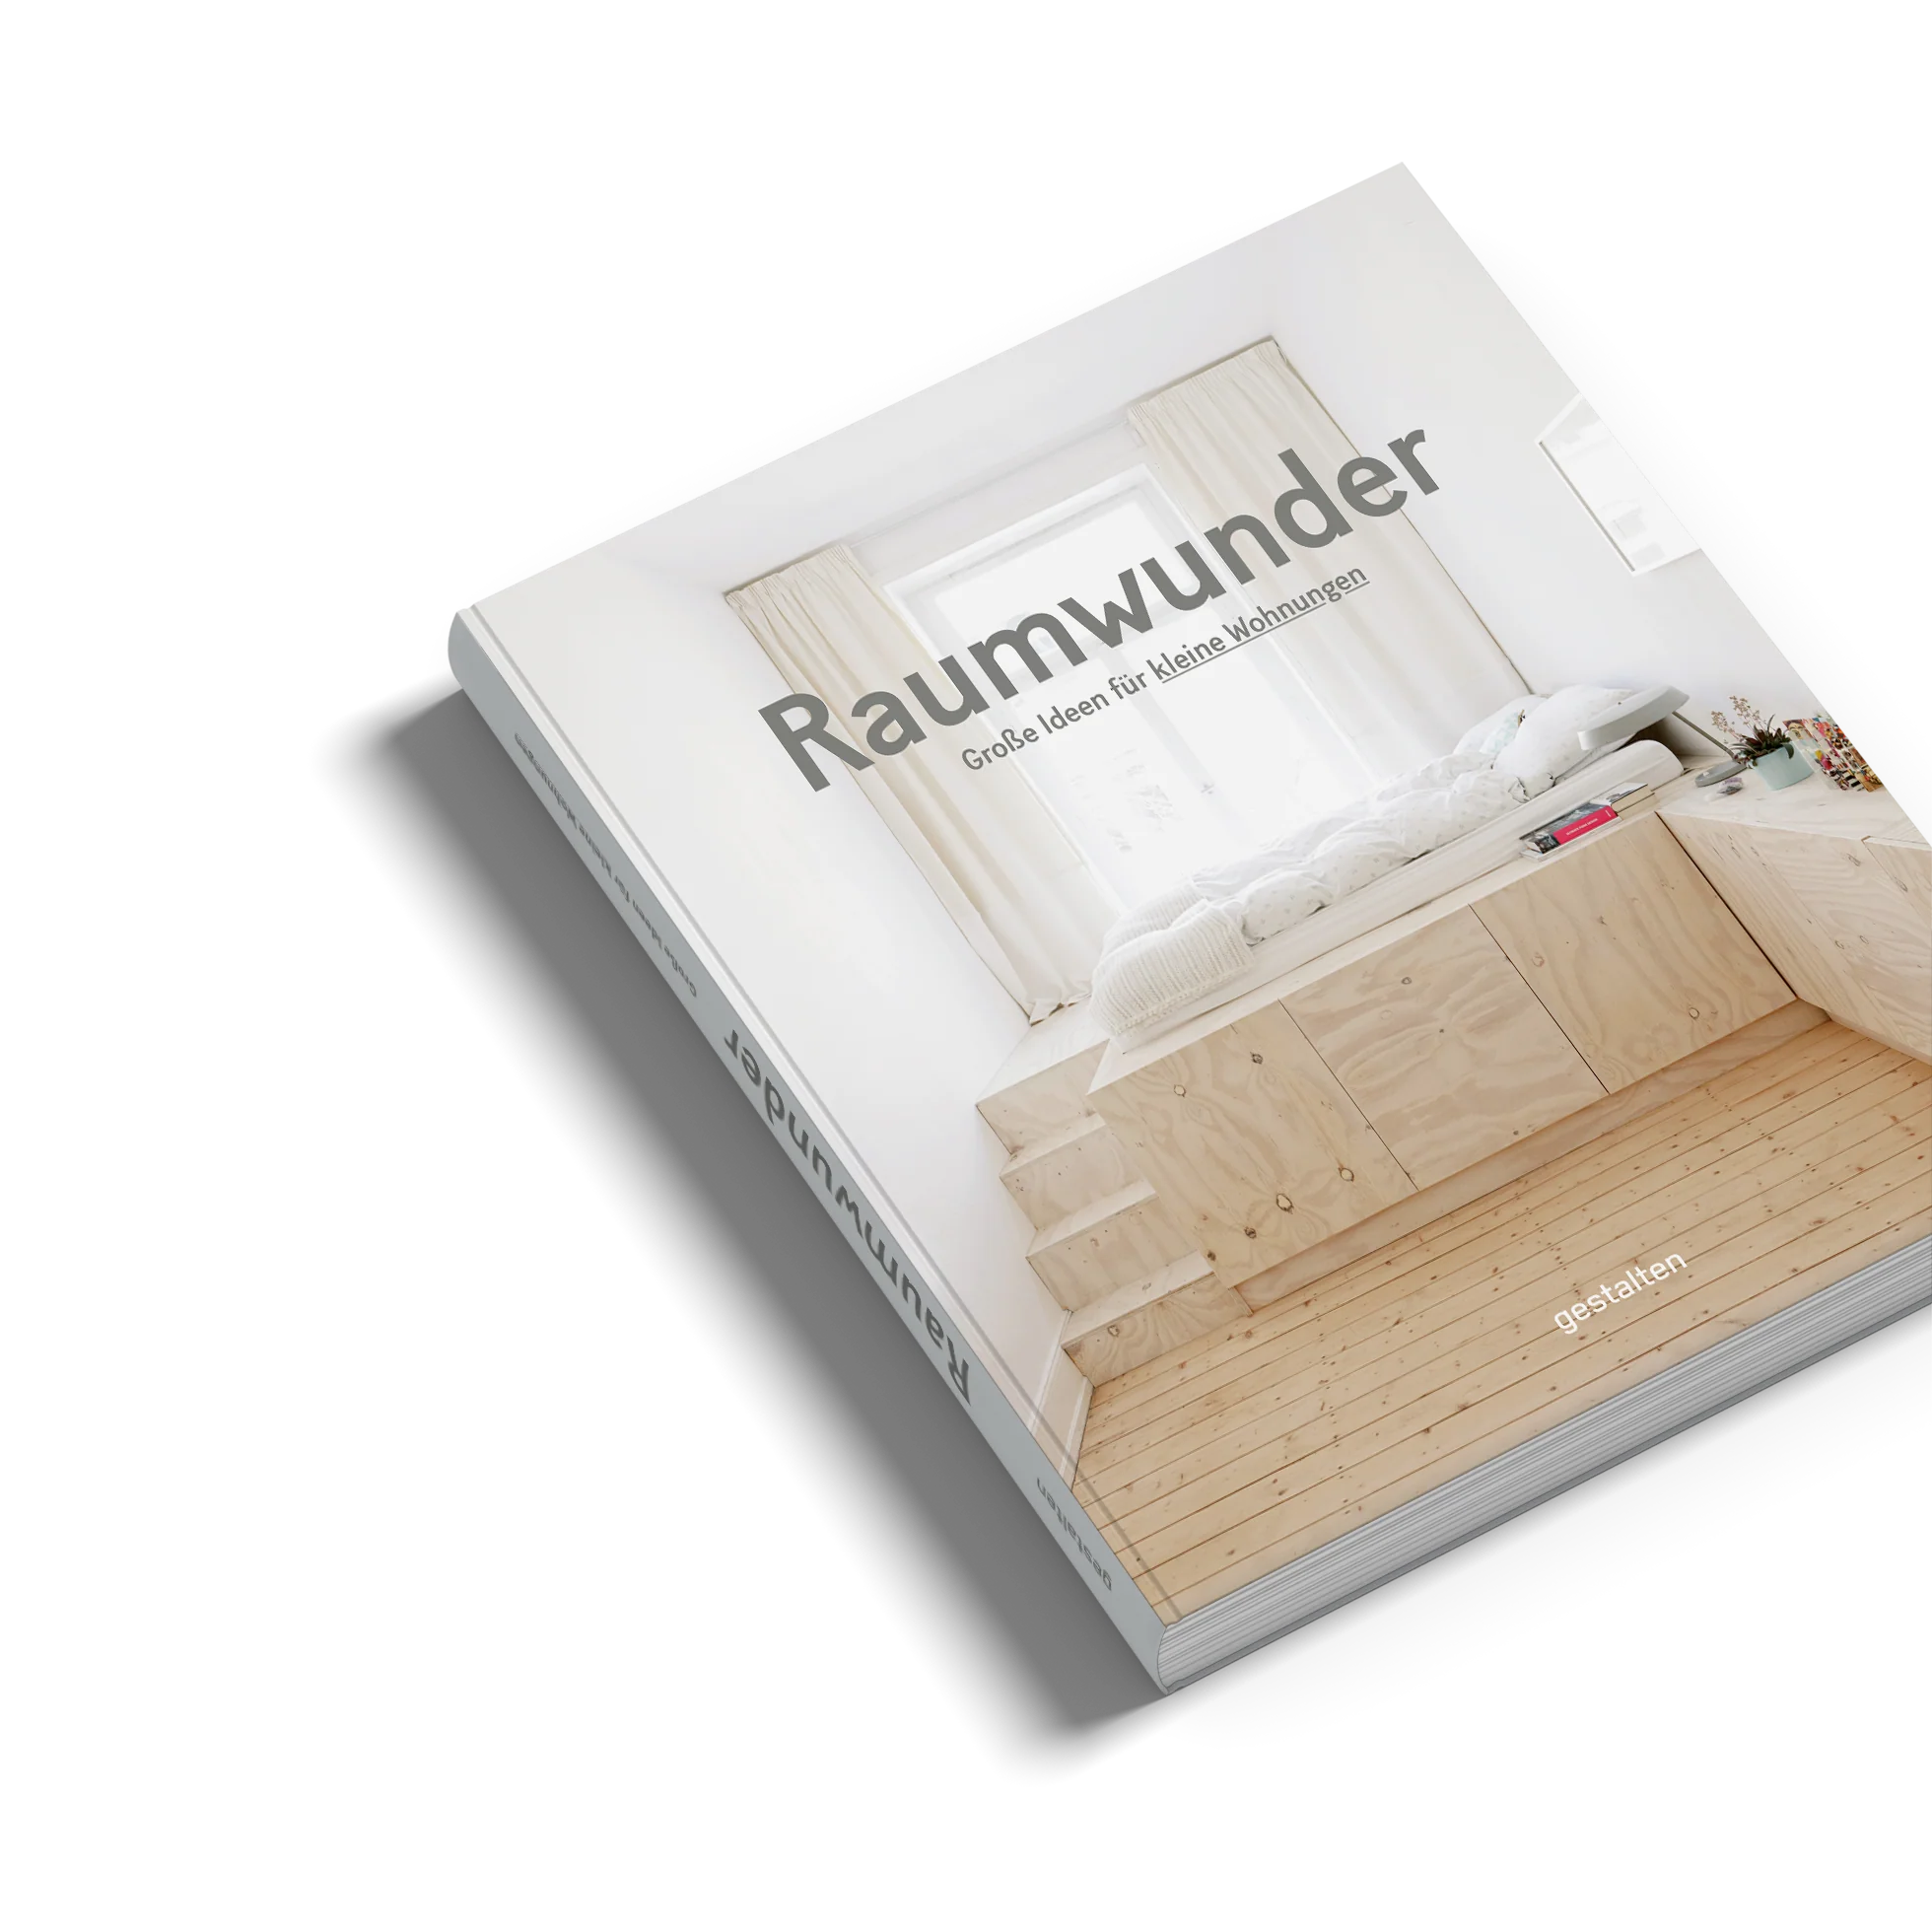 Buch "Raumwunder" / Gestalten